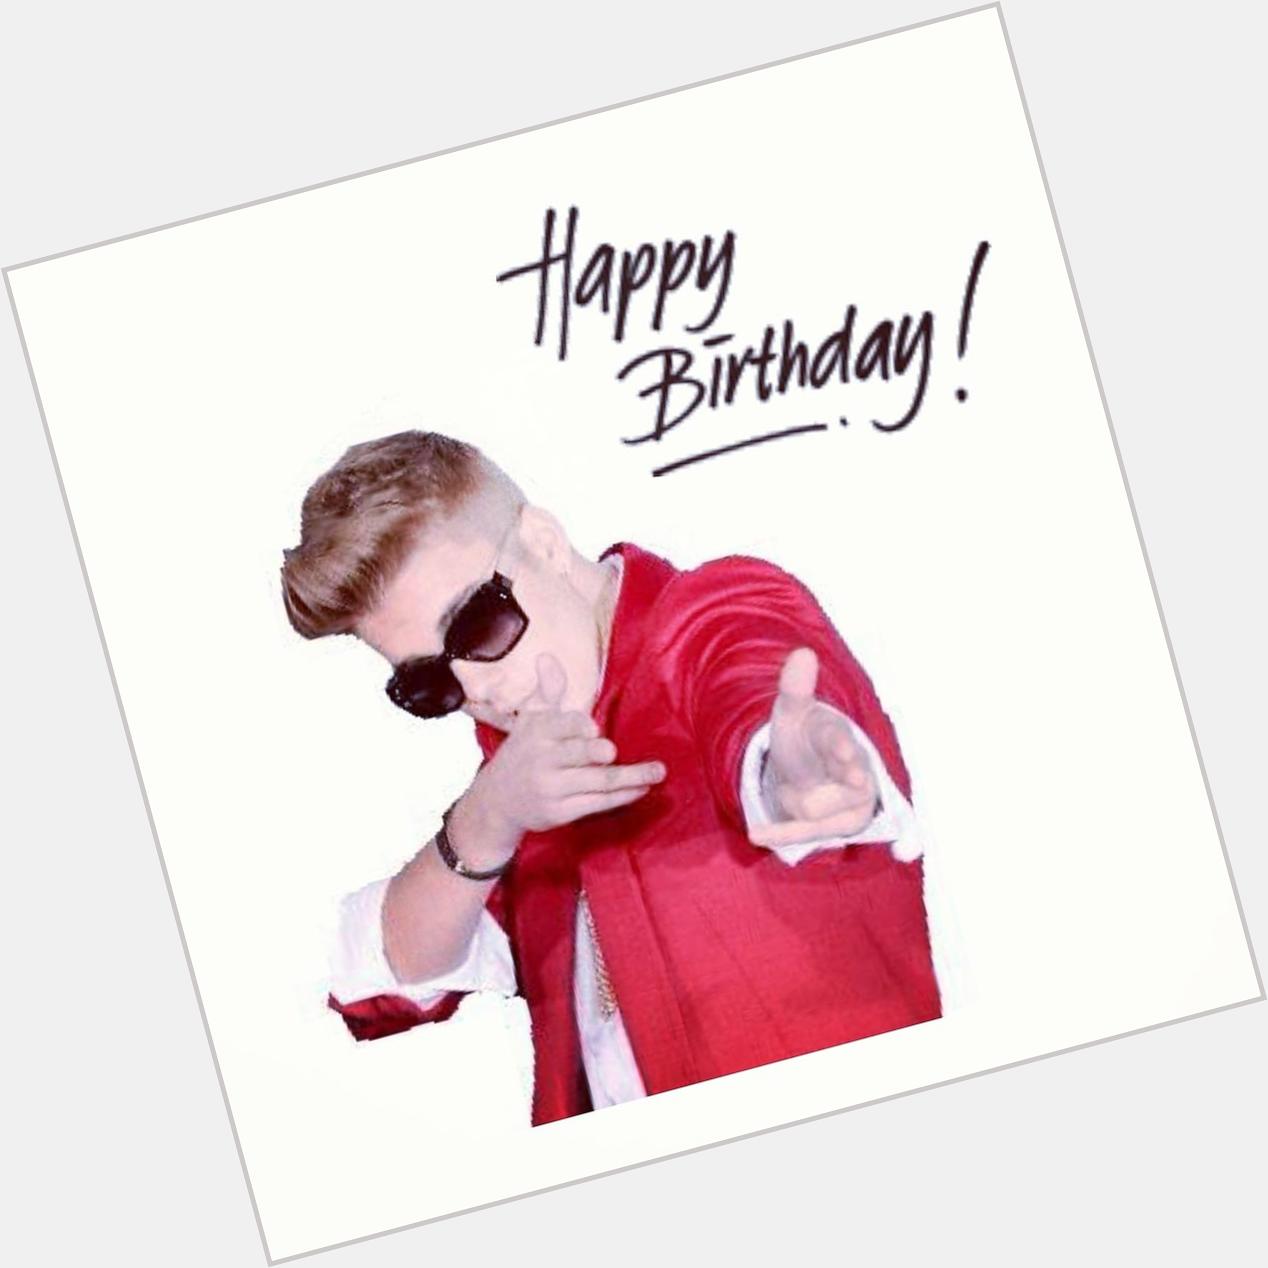 Happy Birthday
Justin Bieber Ke$ha
I love it forever.  